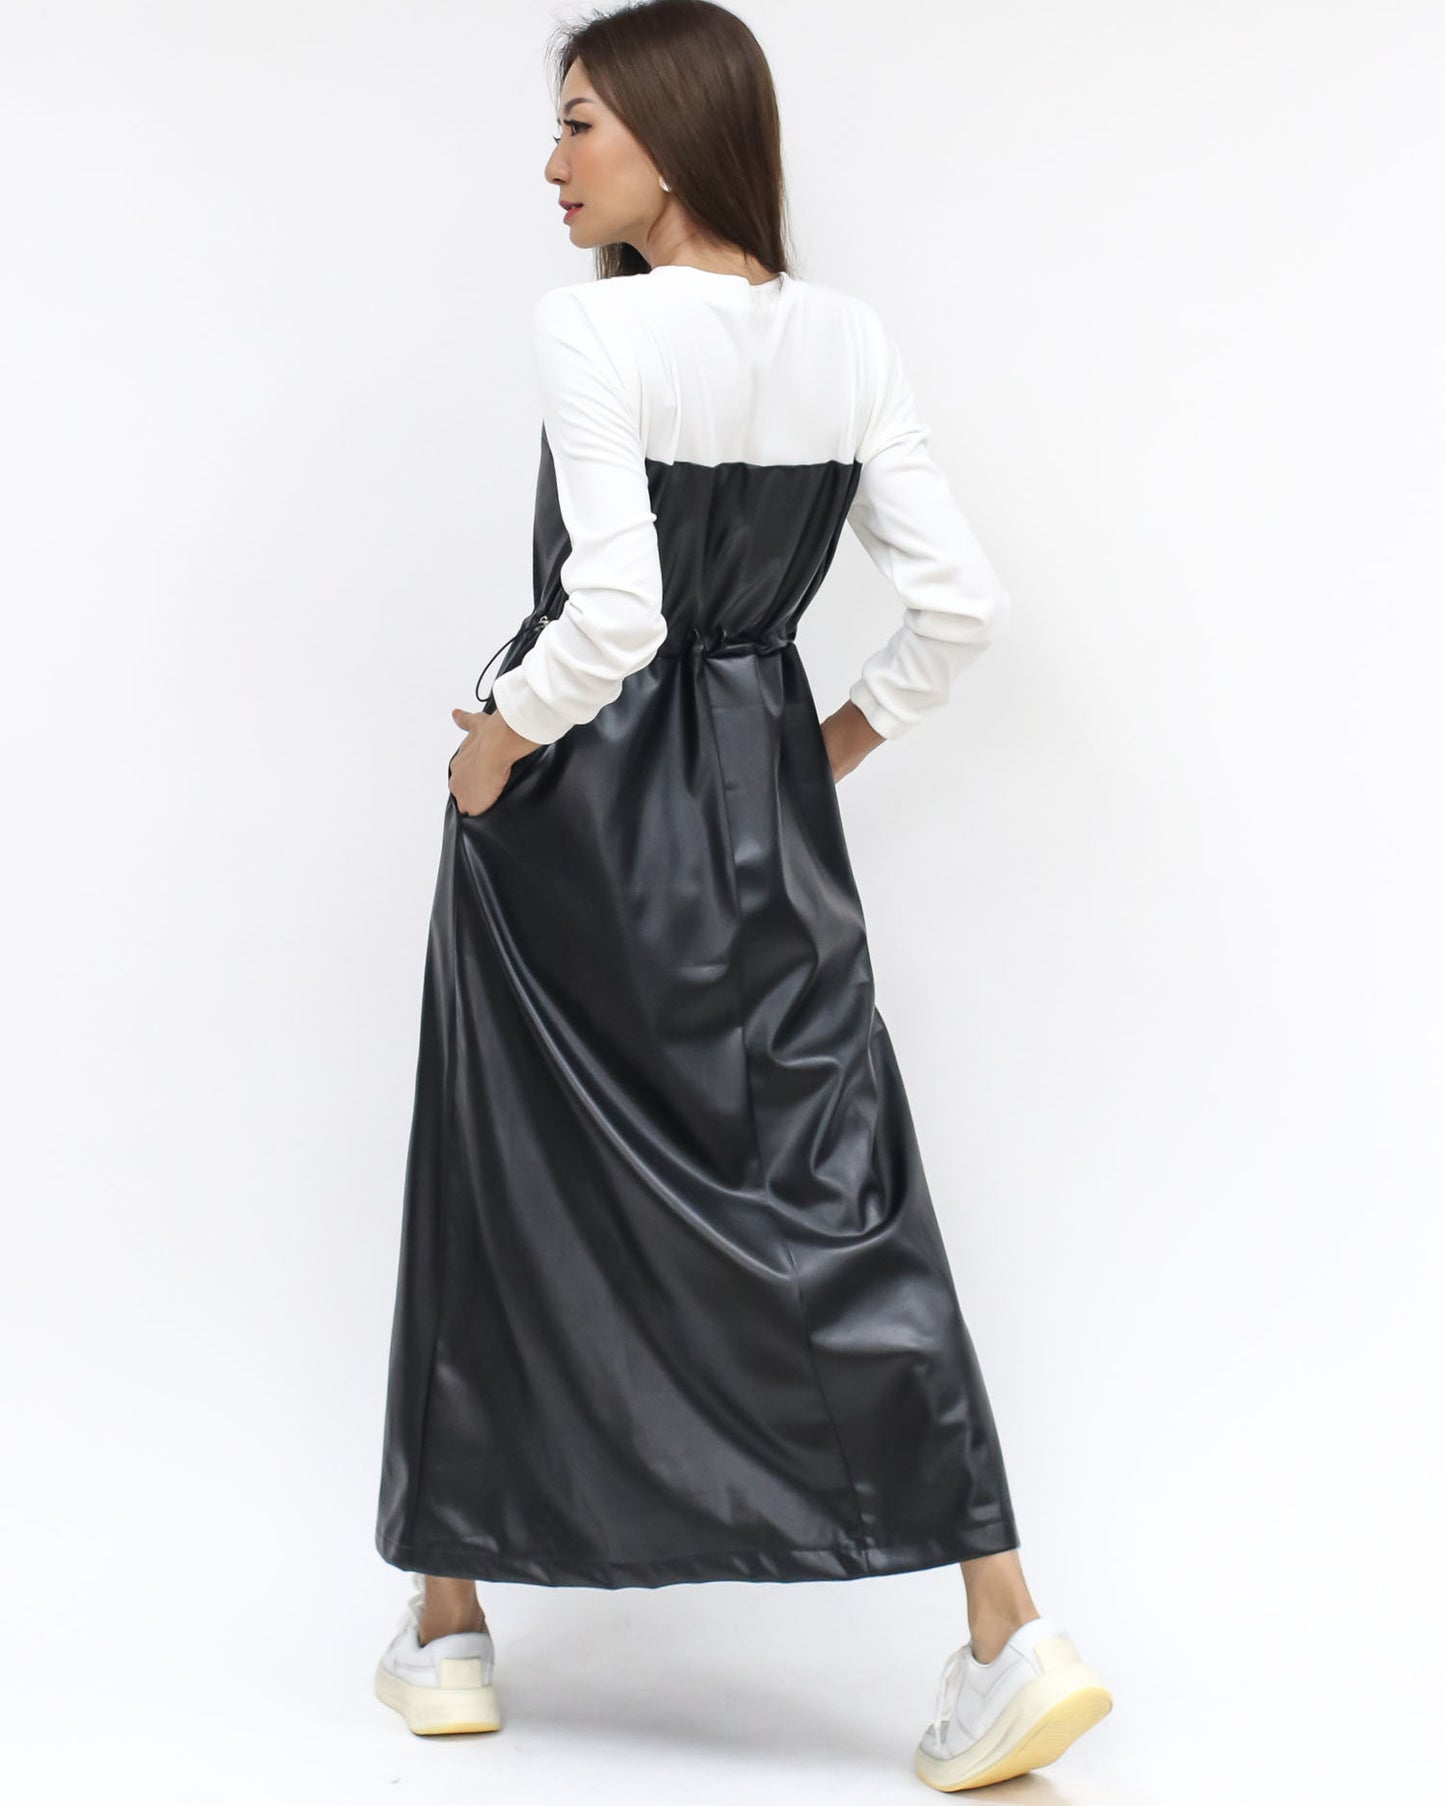 ivory tee w/ black PU leather longline dress